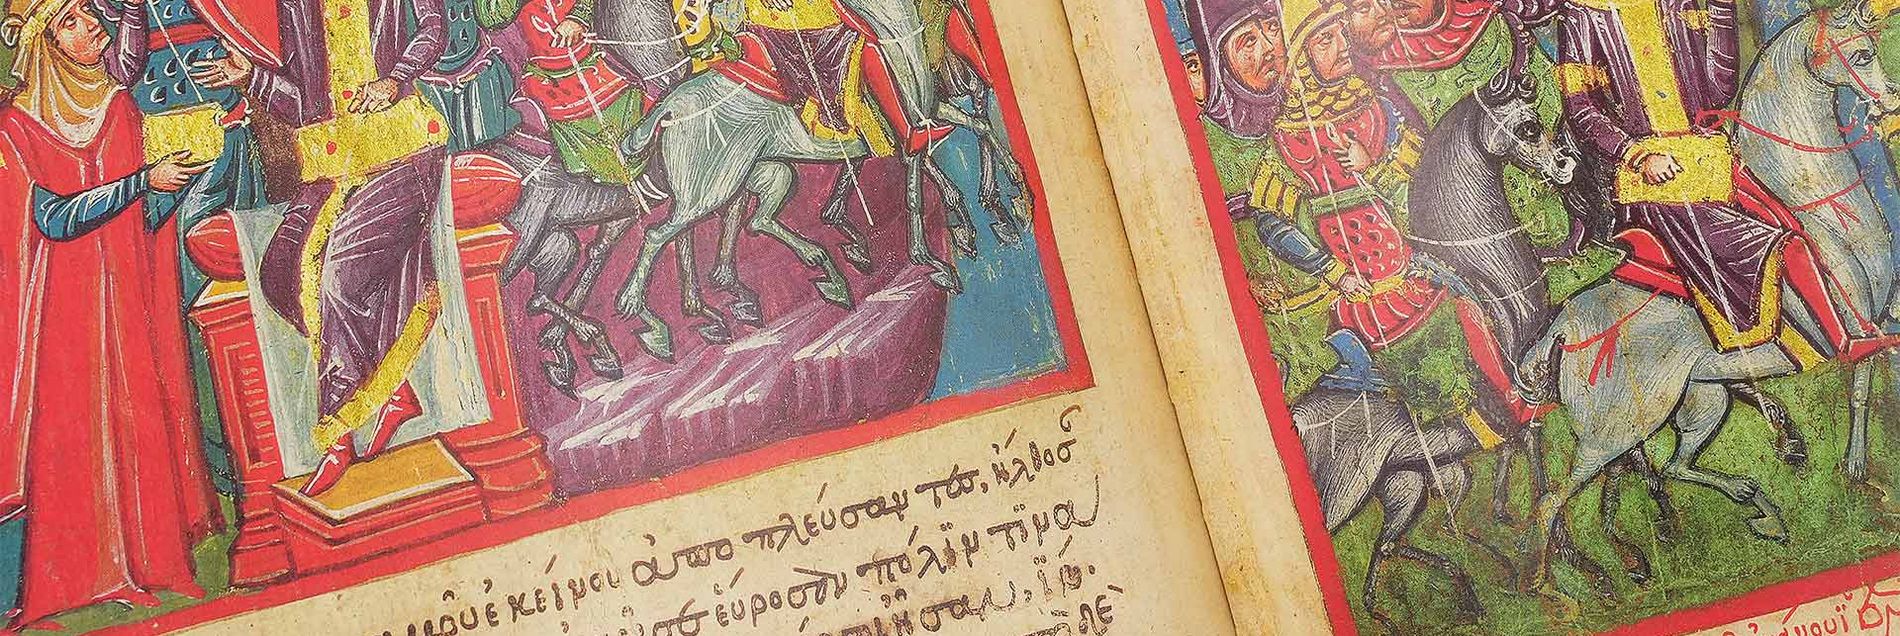 <i>“Ein literarischer Bestseller als politische Propaganda für Kaiser Alexios III. von Trapezunt”</i>